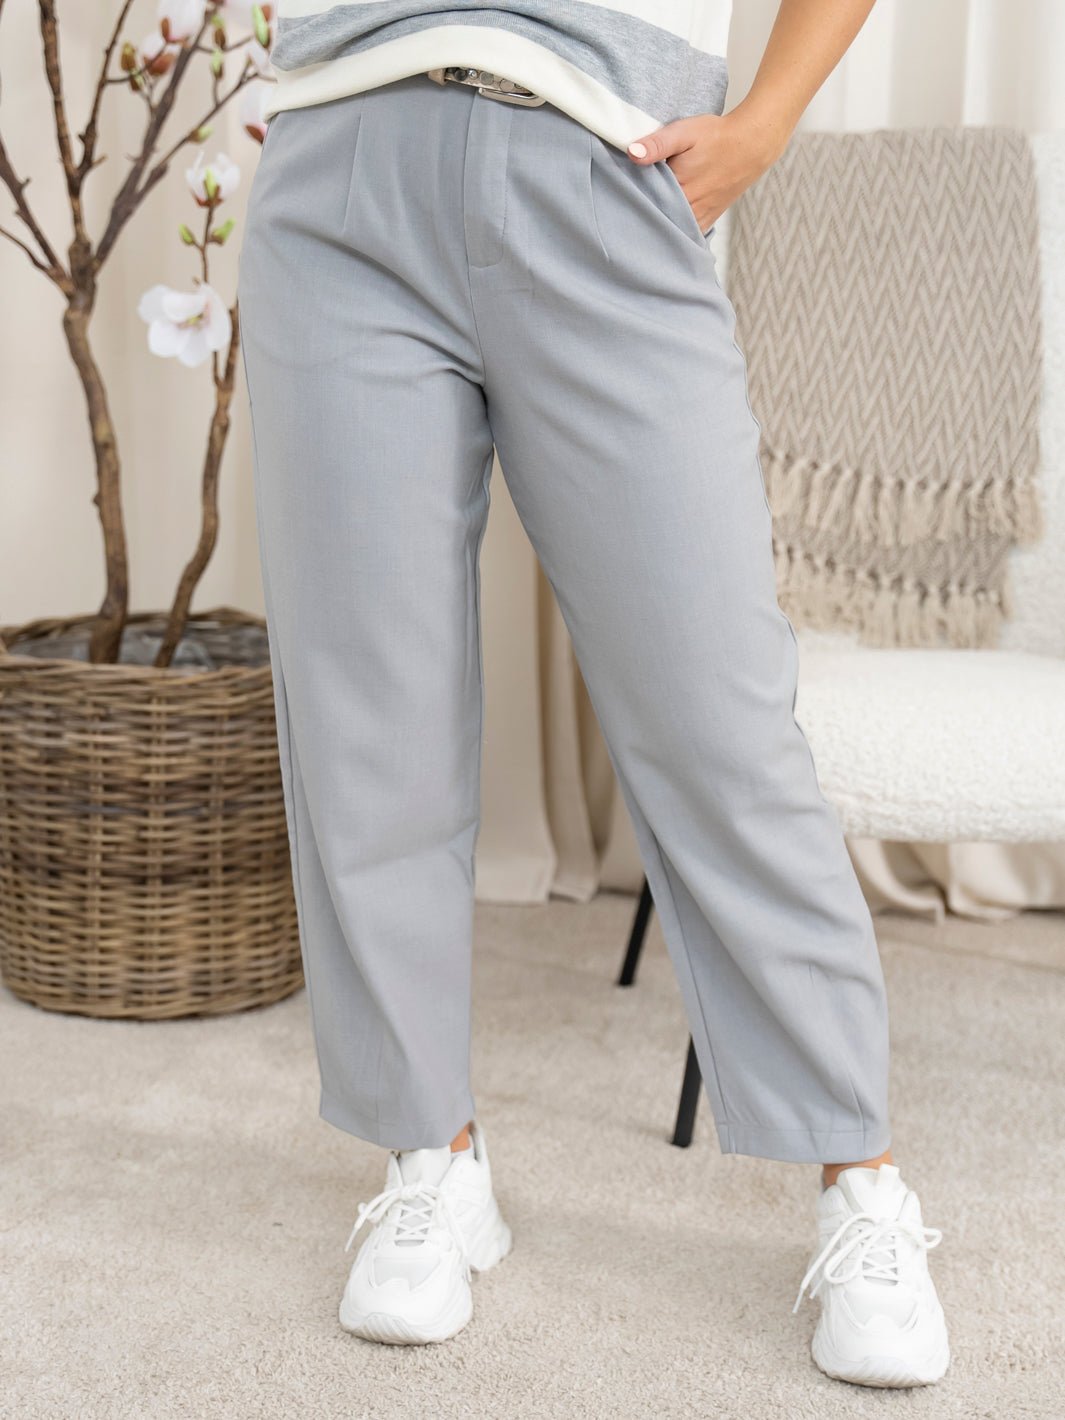 Kaffe KAmerle 7/8 pants suiting grey melange - Online - Mode